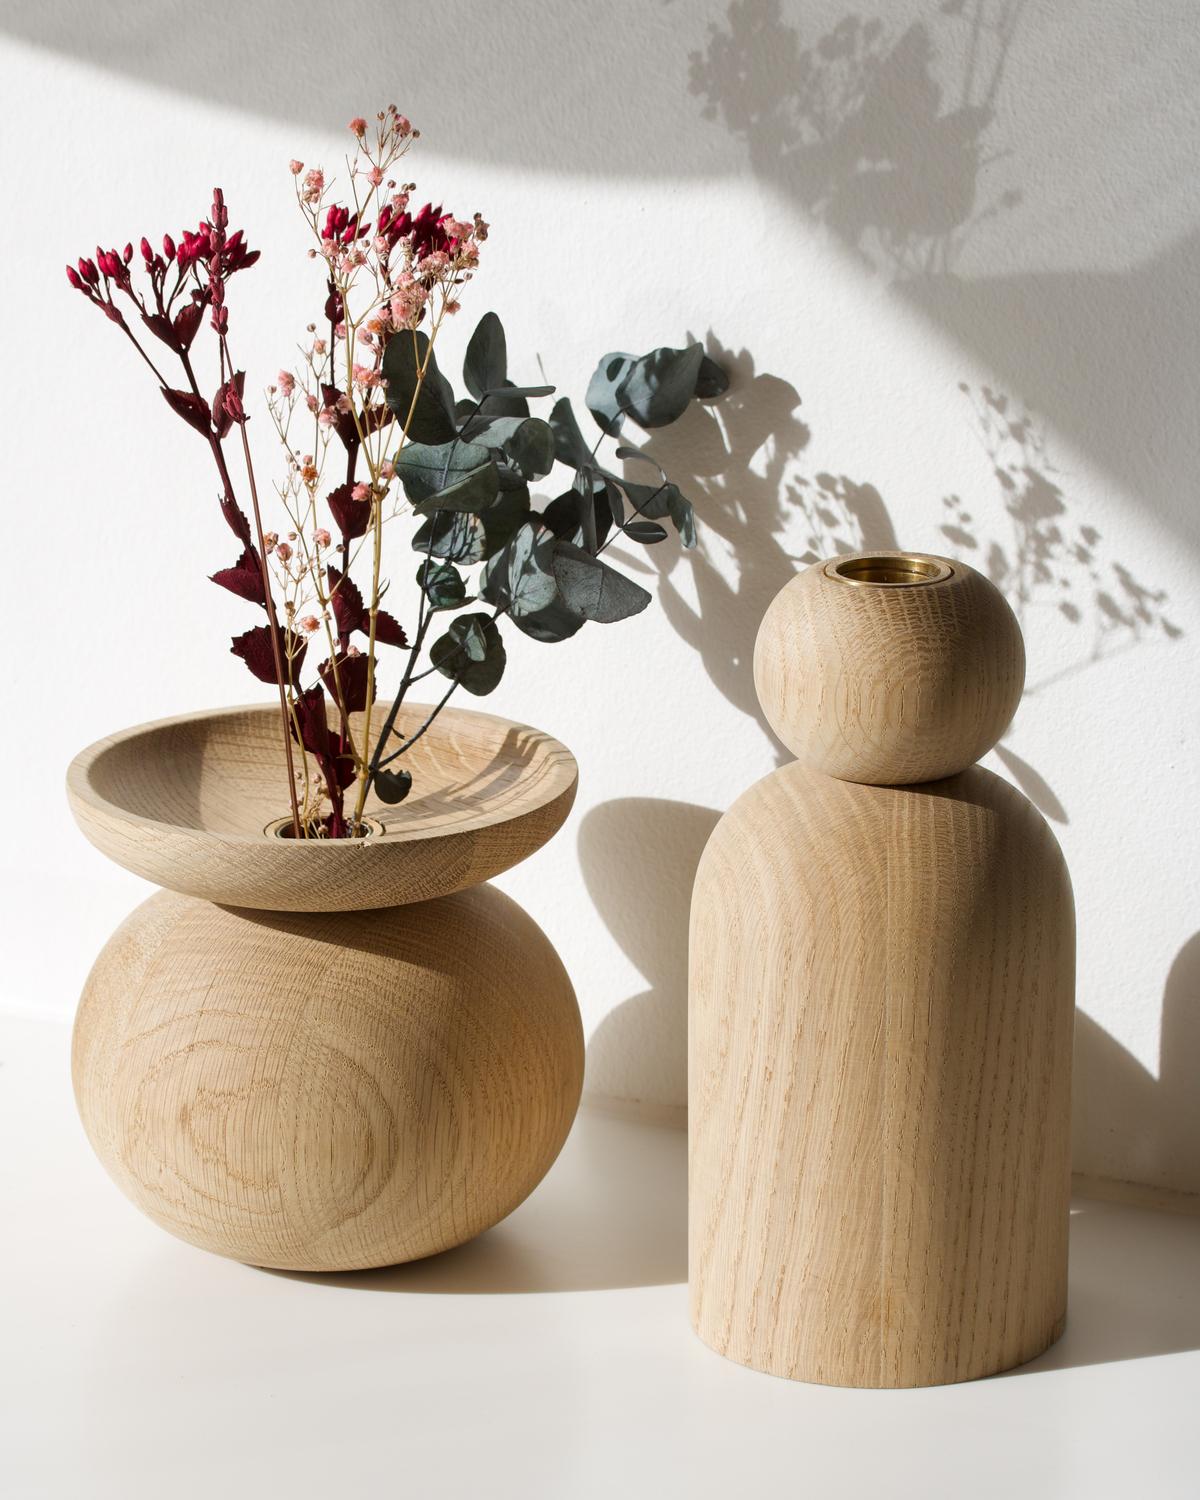 Vase en forme de boule en Oak Oak par Applicata
Dimensions : D 10 x L 10 x H 19 cm
Matériaux : Chêne.

Disponible en forme de boule, de cône et de bol.
Disponible en chêne, chêne fumé et chêne teinté noir.

La collection de vases Shape est une série